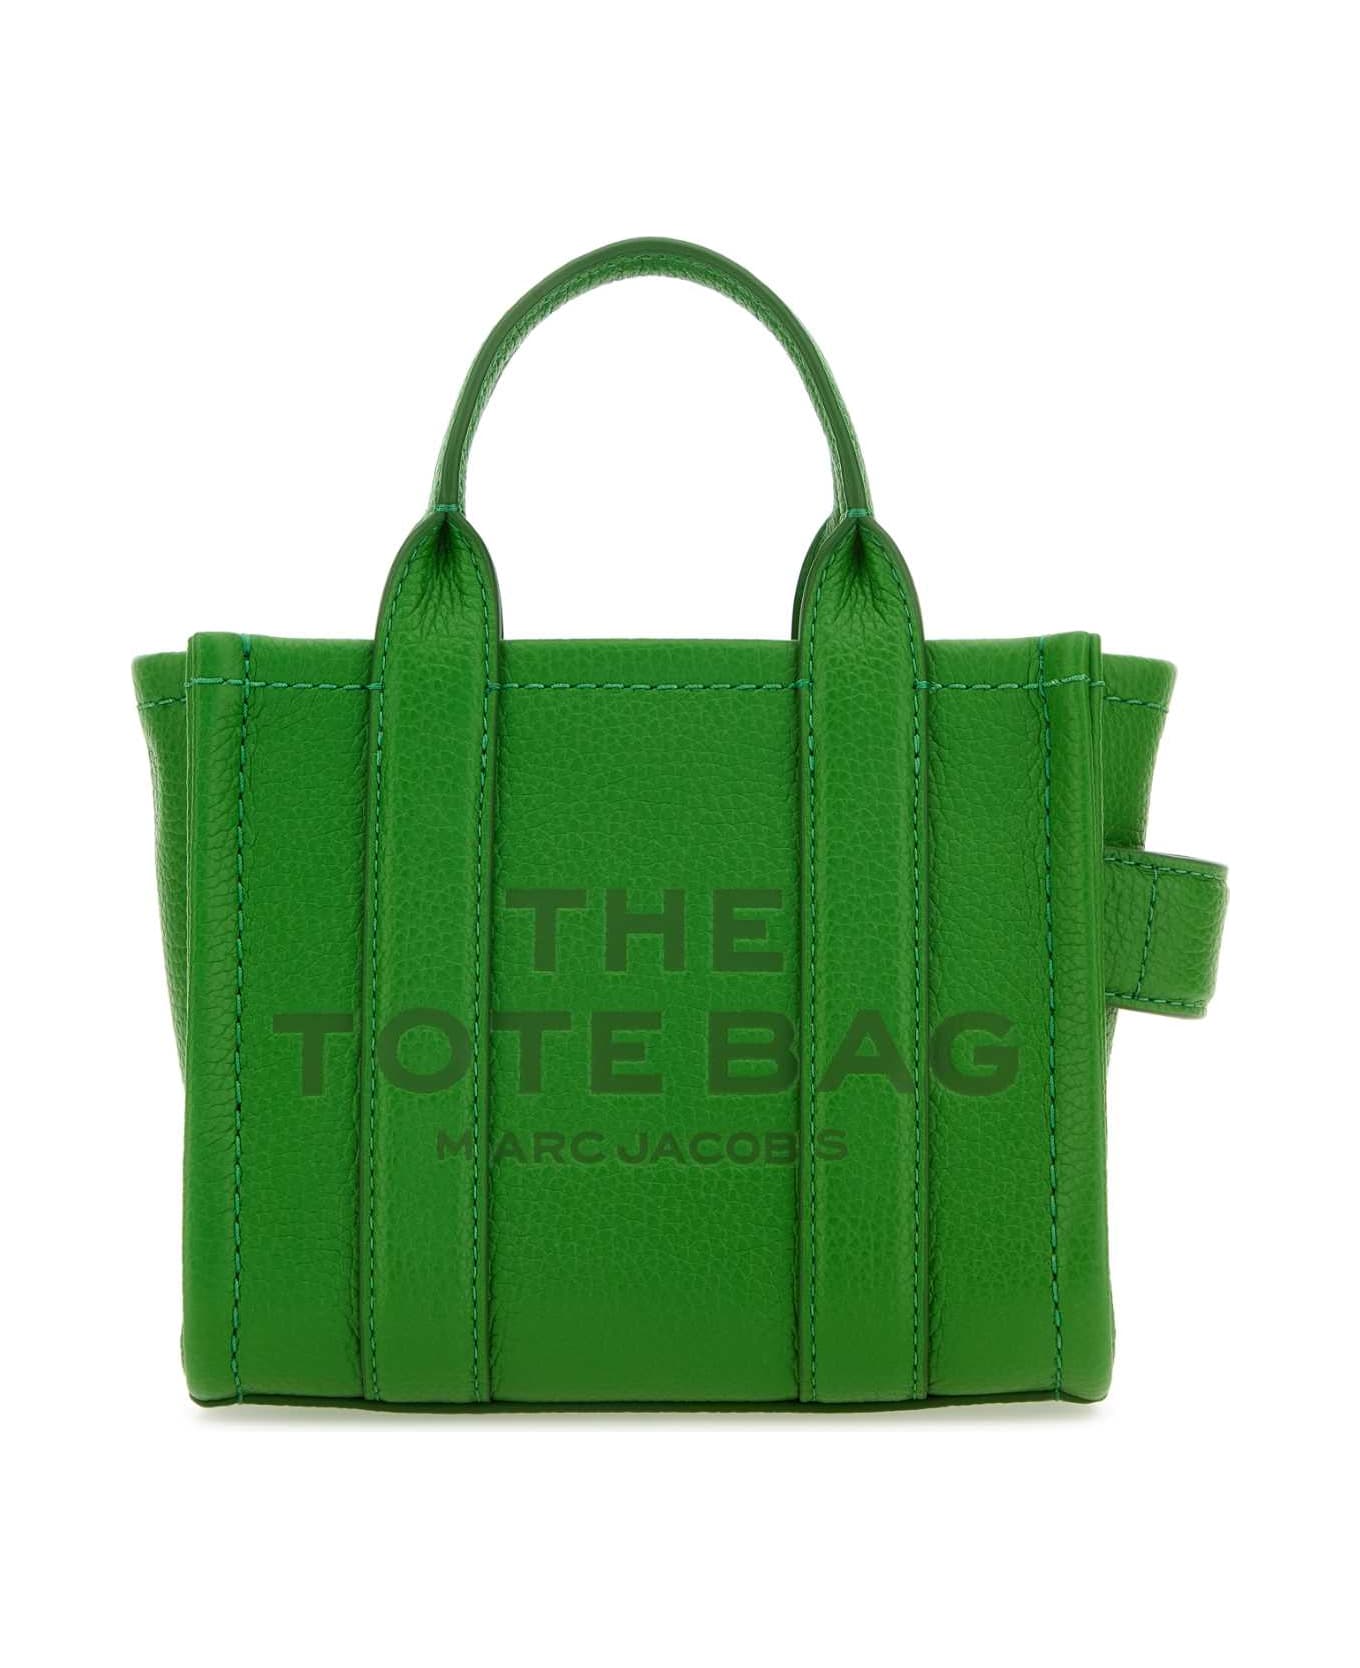 Marc Jacobs Green Leather Micro The Tote Bag Handbag - KIWI